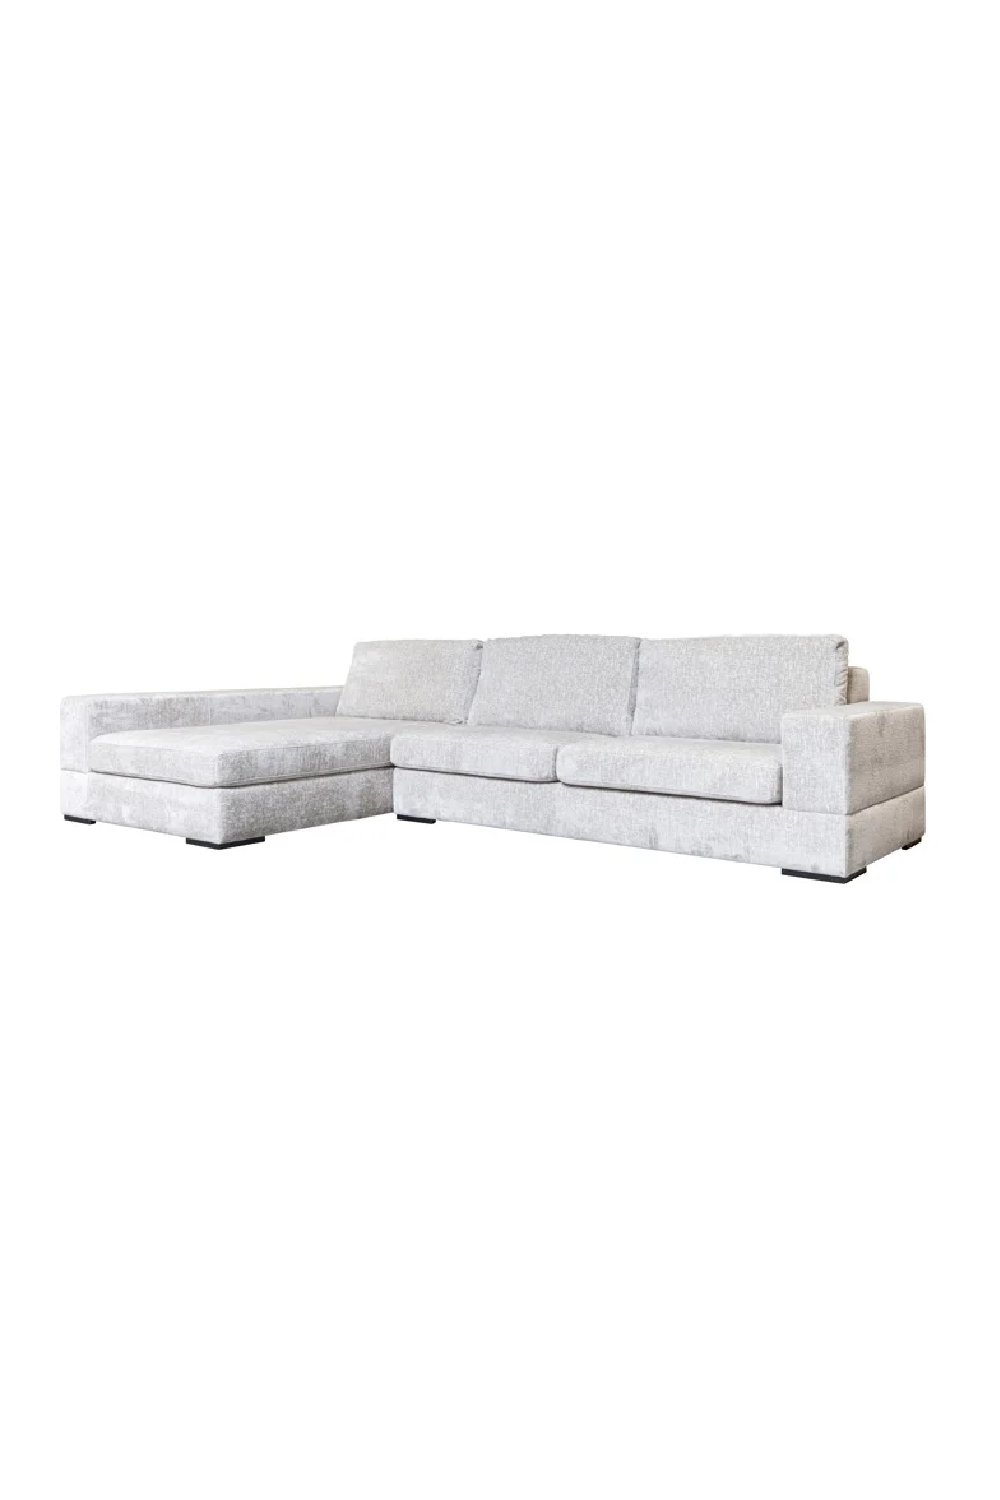 White Sectional Sofa Set | OROA Pasha | Oroa.com